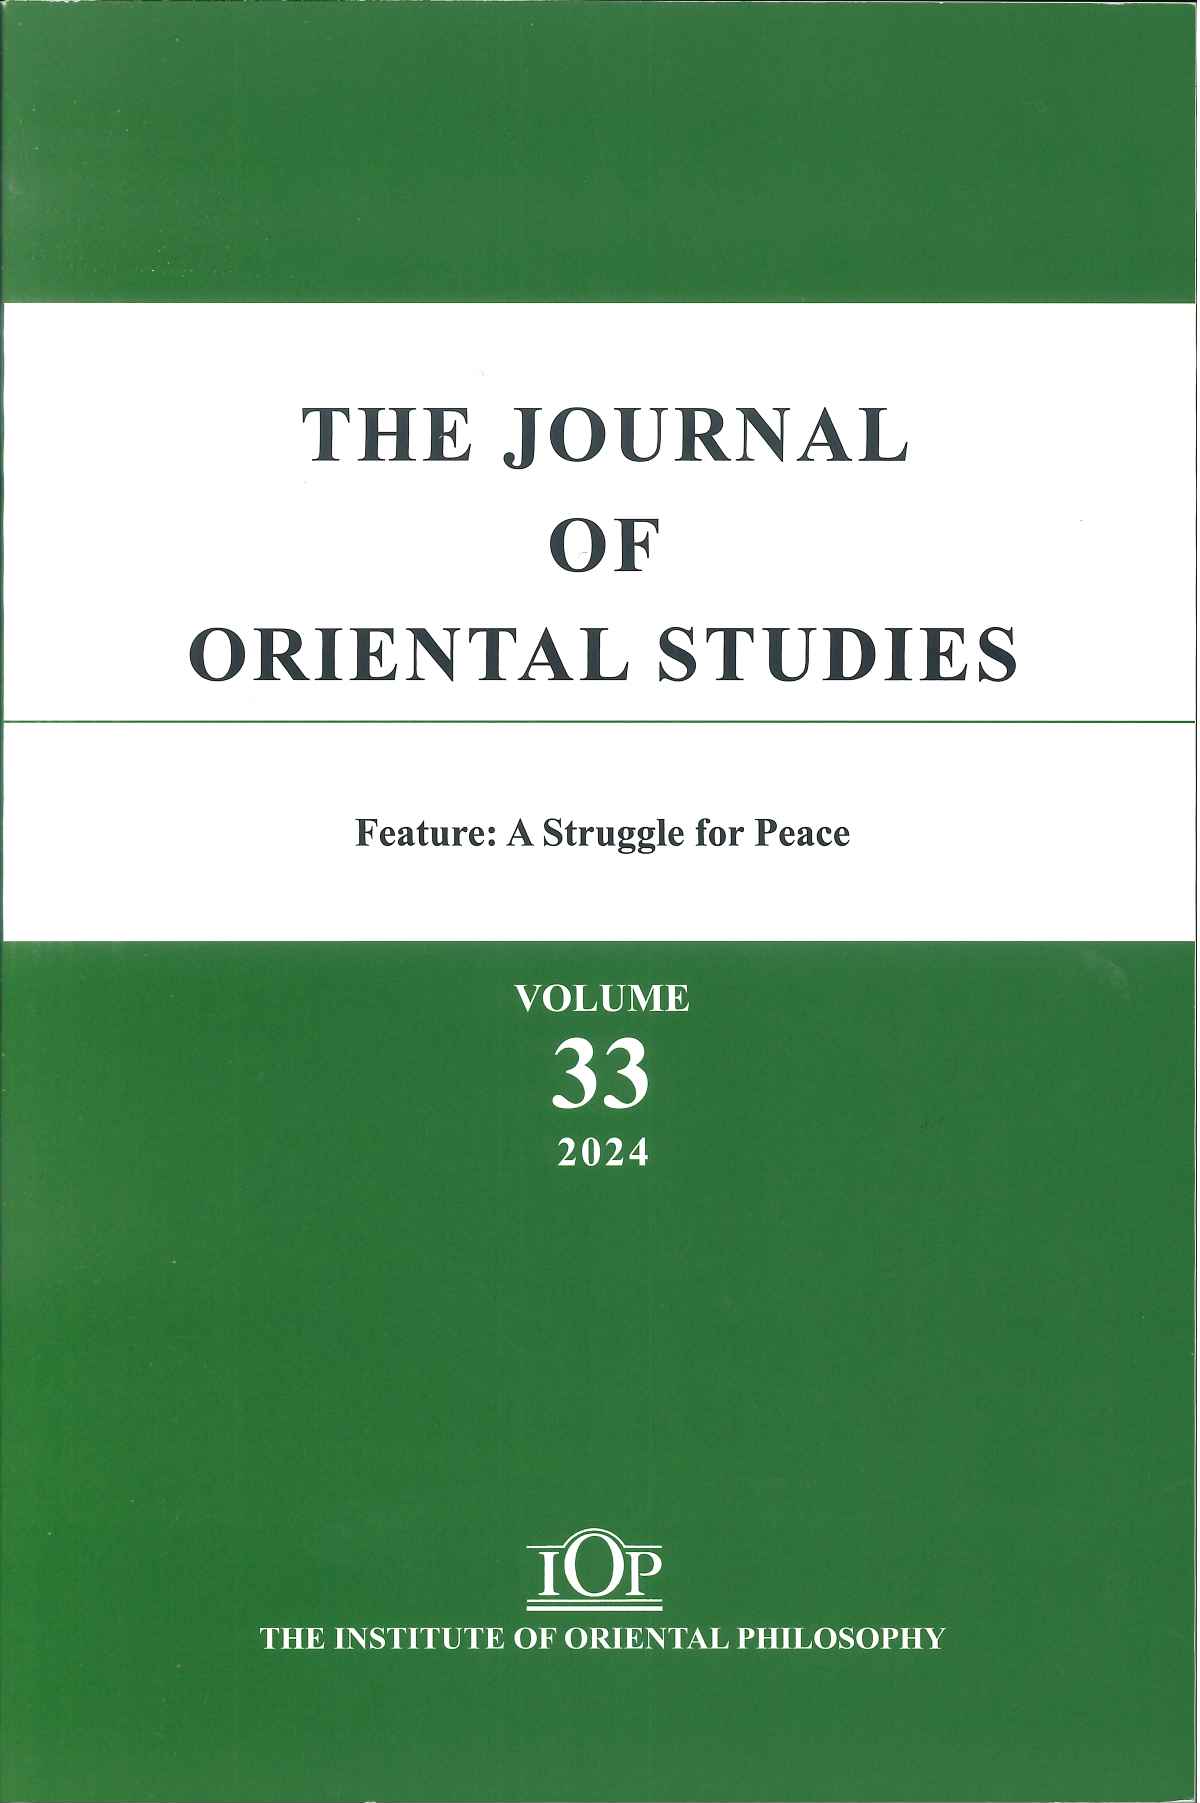 THE JOURNAL OF ORIENTAL STUDIES Vol.33